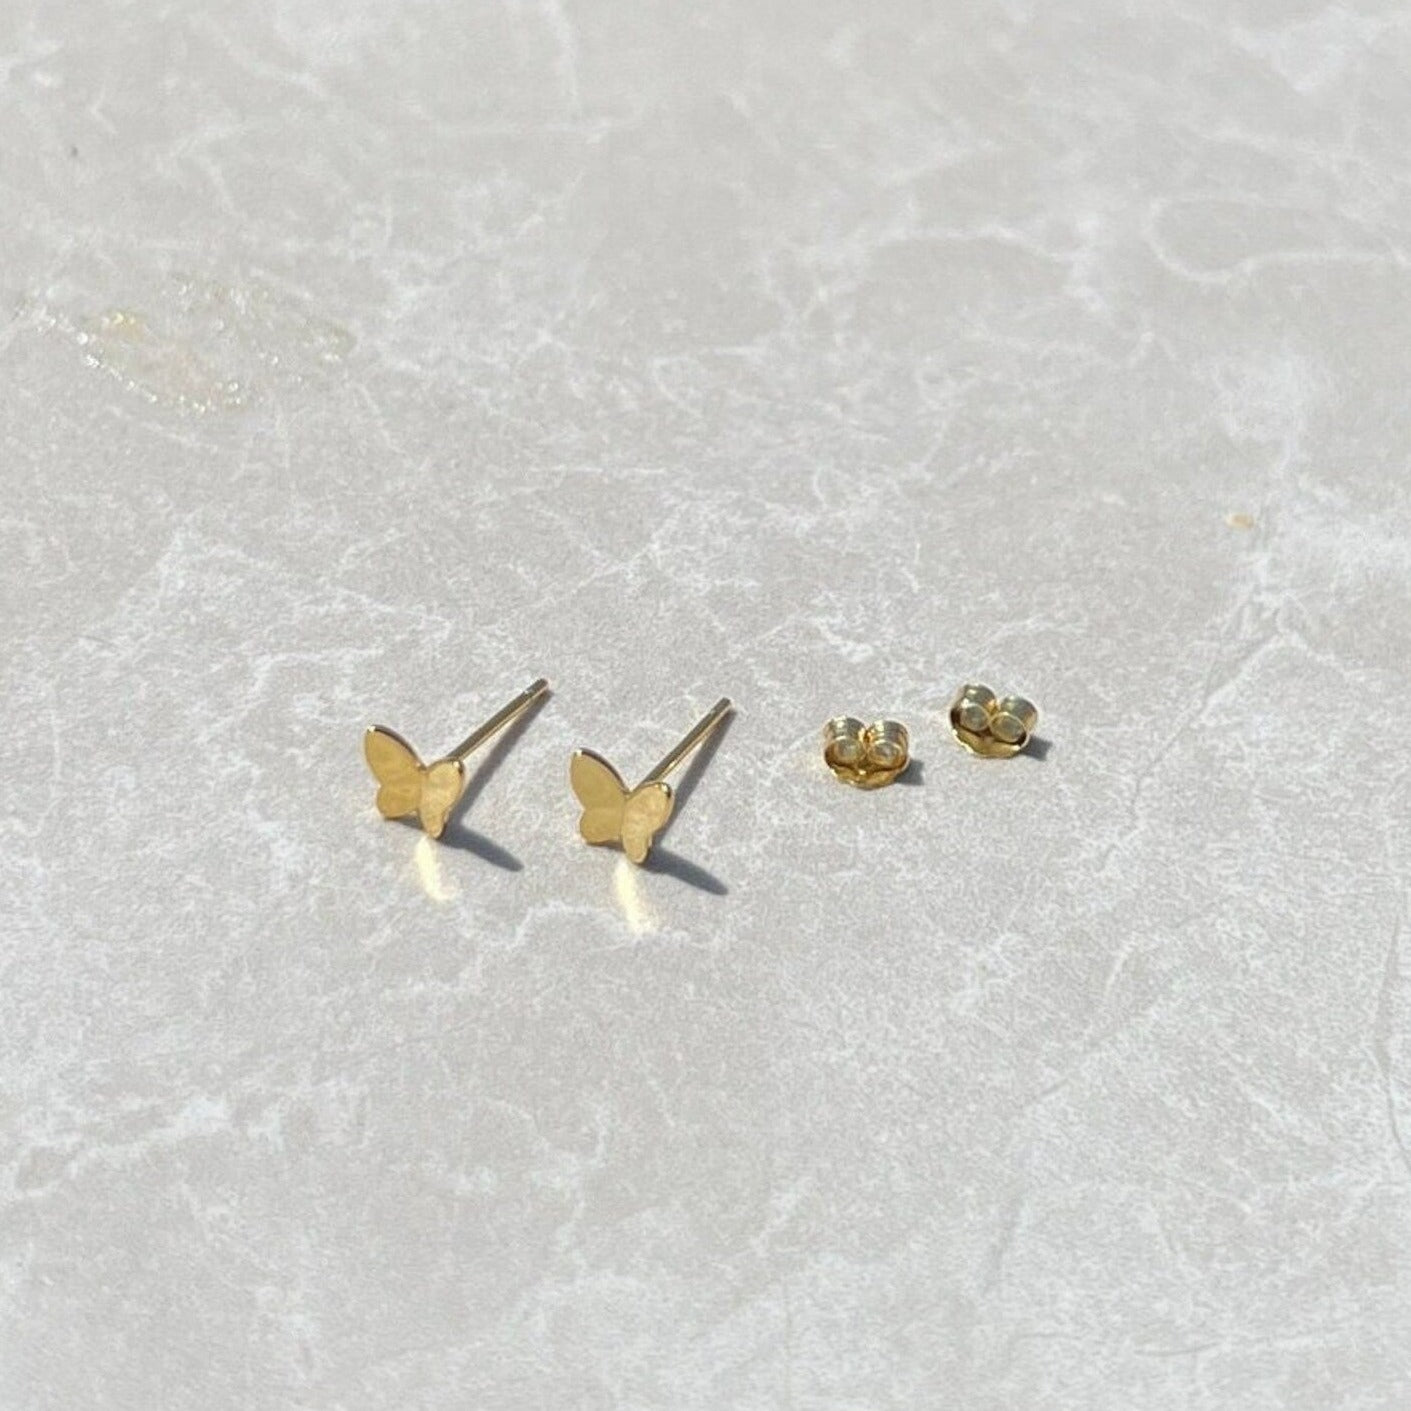 Butterfly stud earrings, in yellow gold